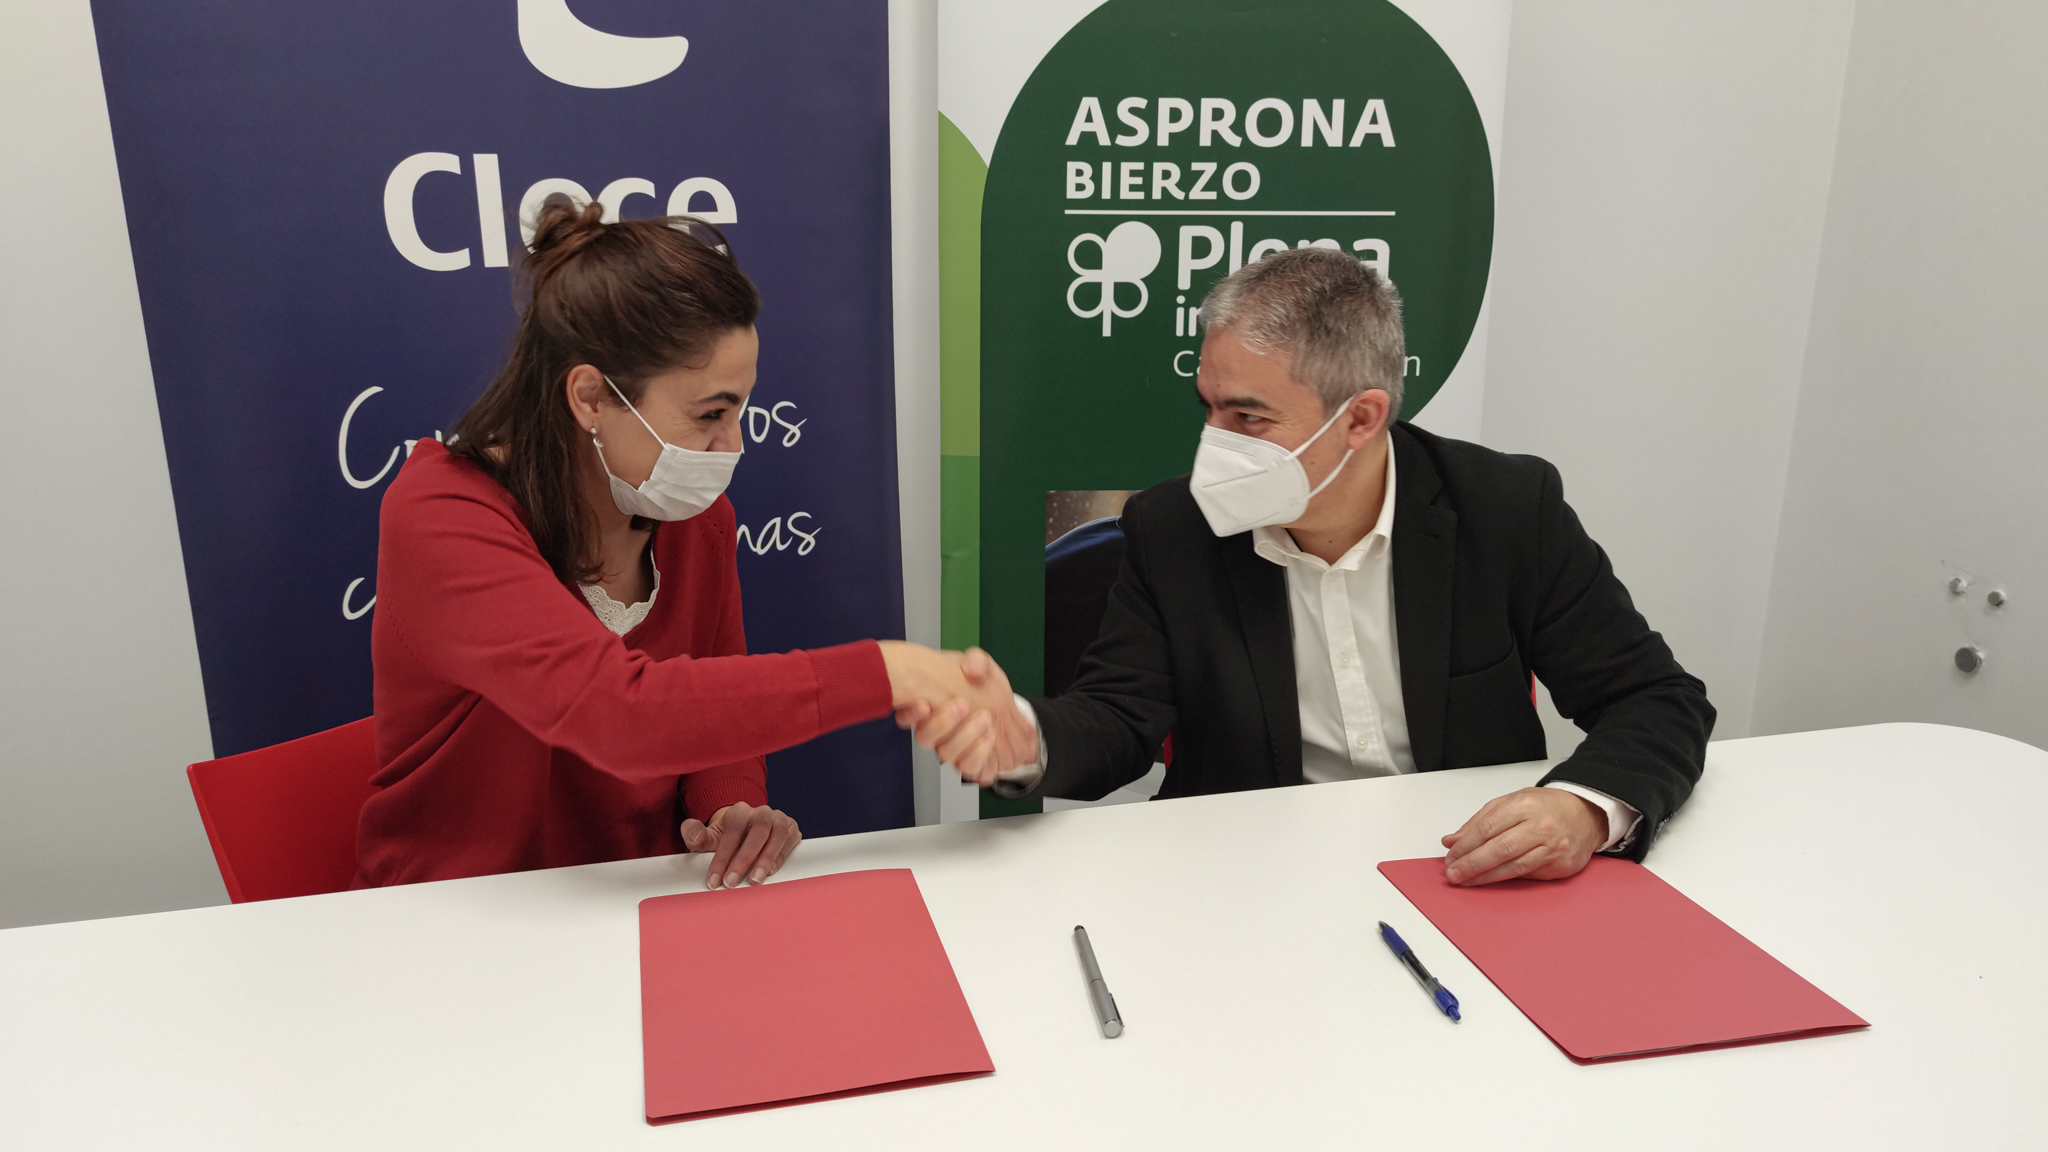 Asprona Bierzo y Clece inician su colaboración para facilitar el acceso al mercado de trabajo de las personas con discapacidad intelectual 1